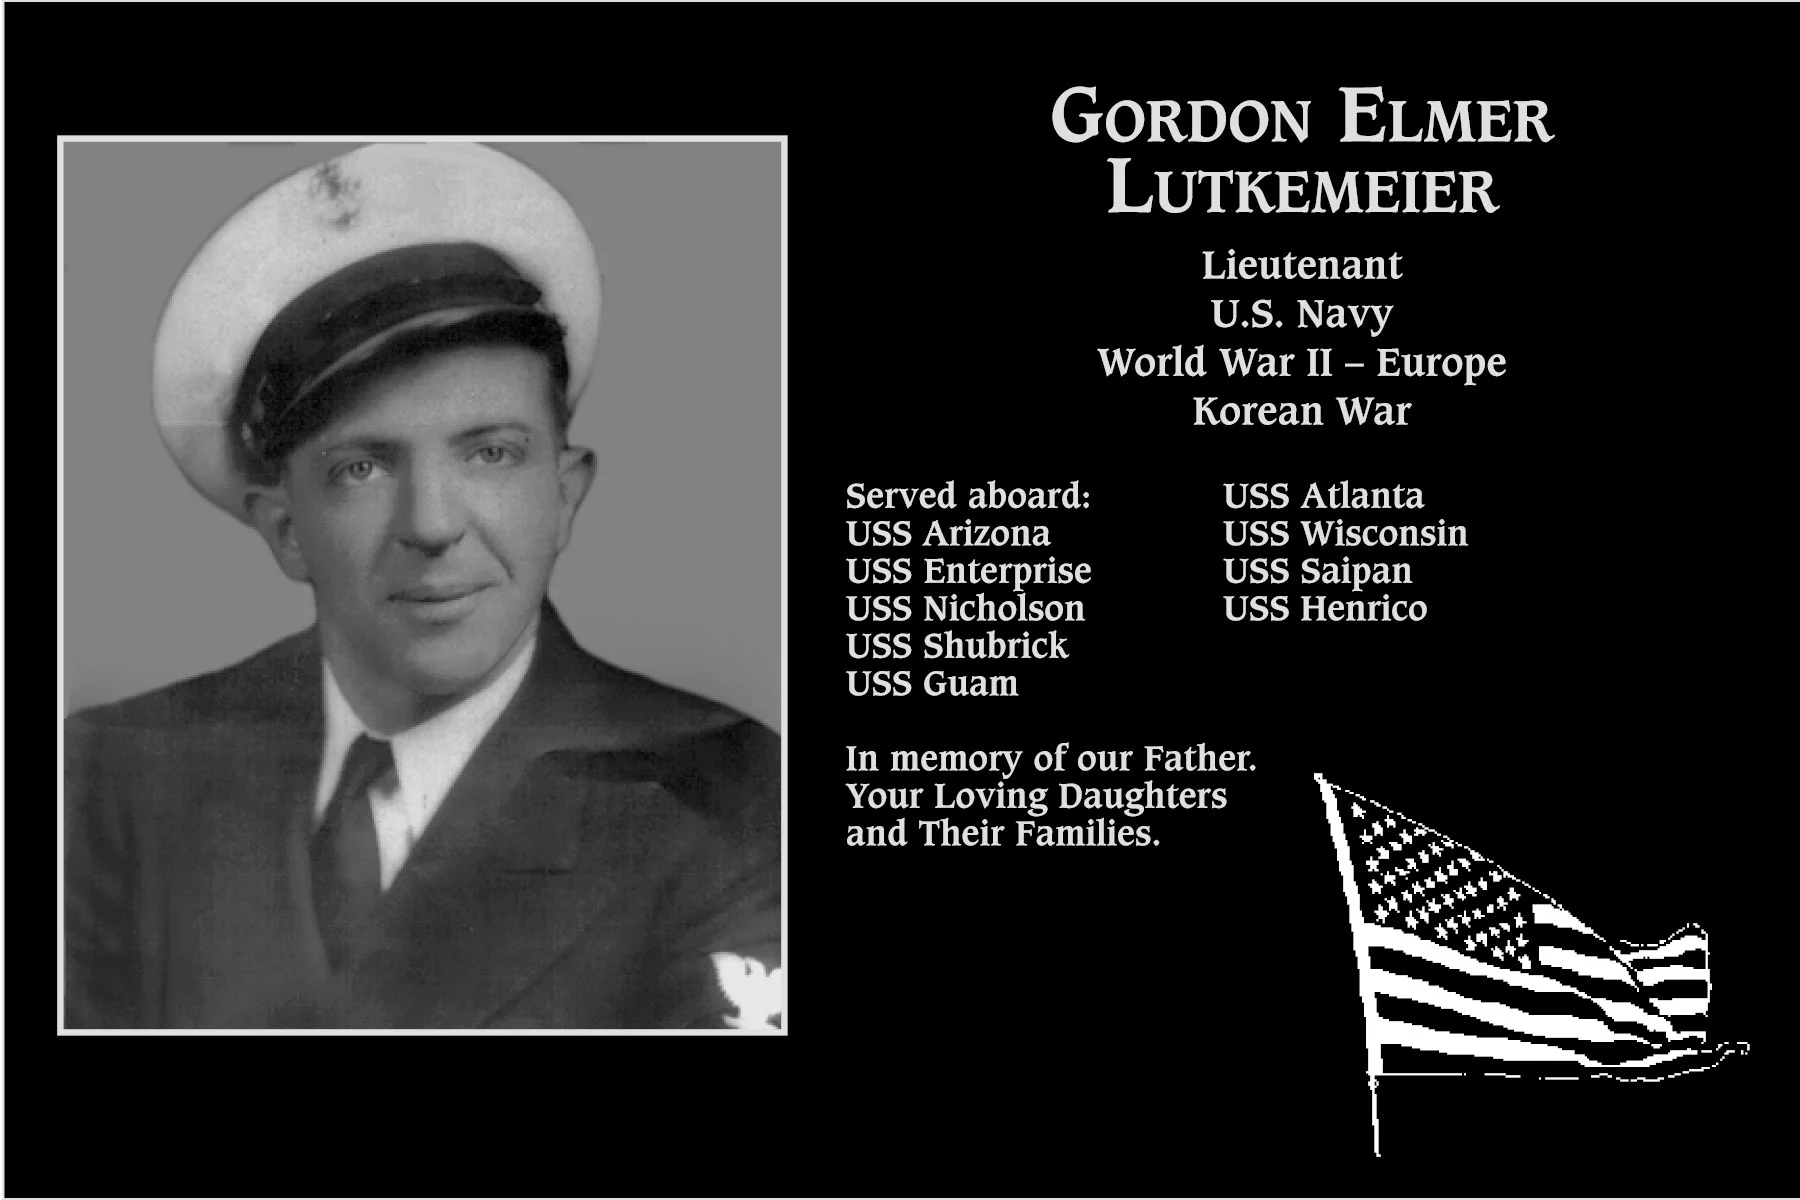 Gordon Elmer Lutkemeier